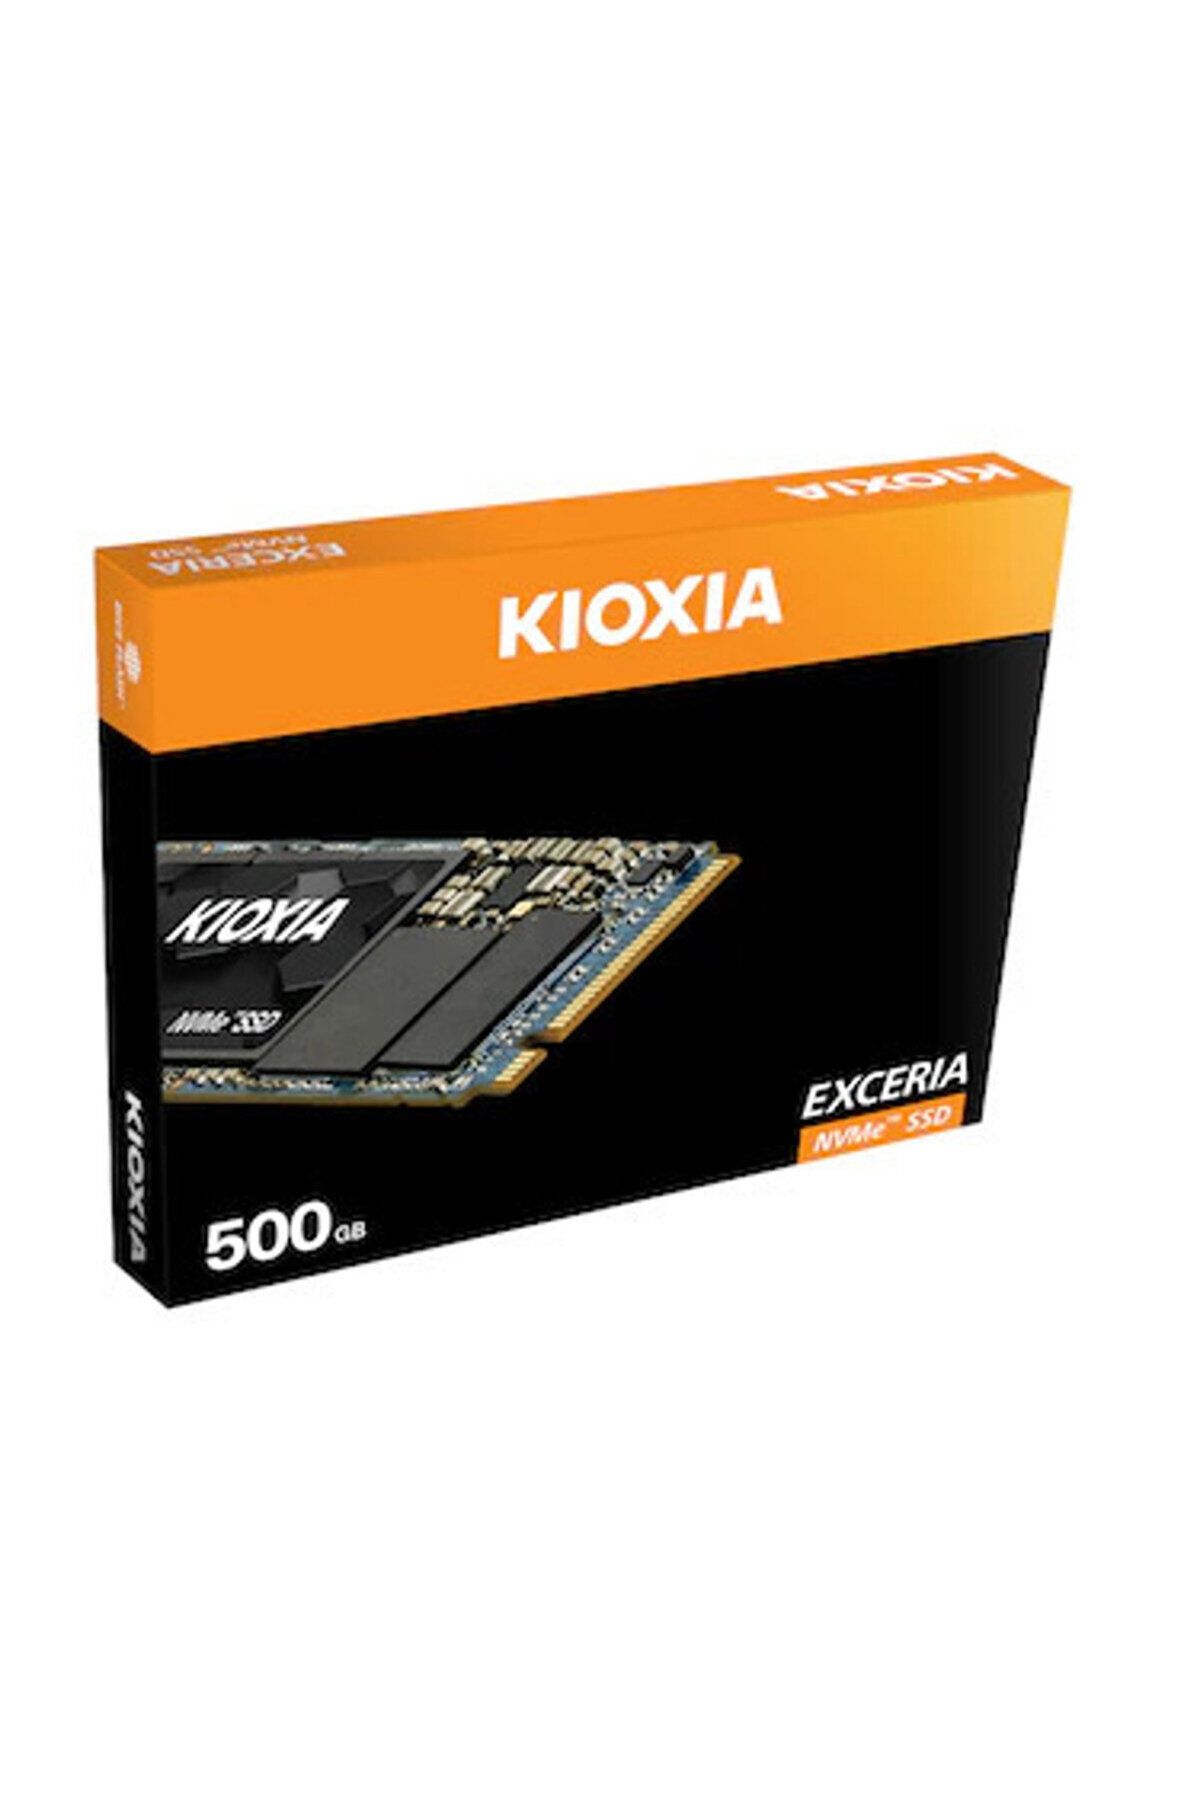 Kioxia 500Gb Exceria G2 Lrc20Z500Gg8 2100-1700Mb-Sn Nvme Pcie M.2 Ssd Harddisk